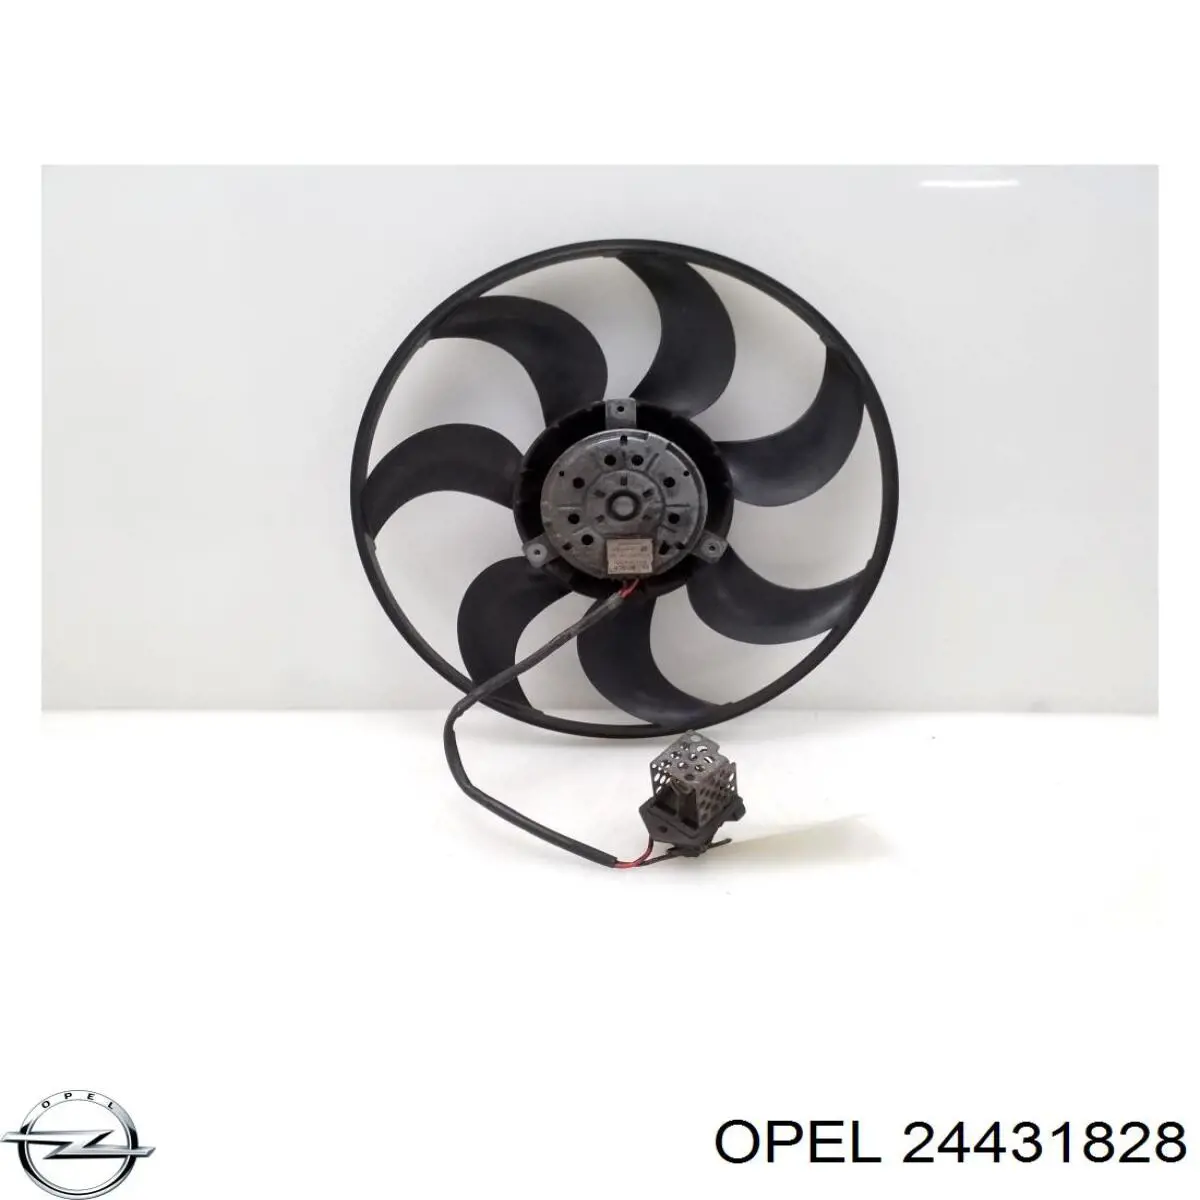 24431828 Opel диффузор радиатора охлаждения, в сборе с мотором и крыльчаткой